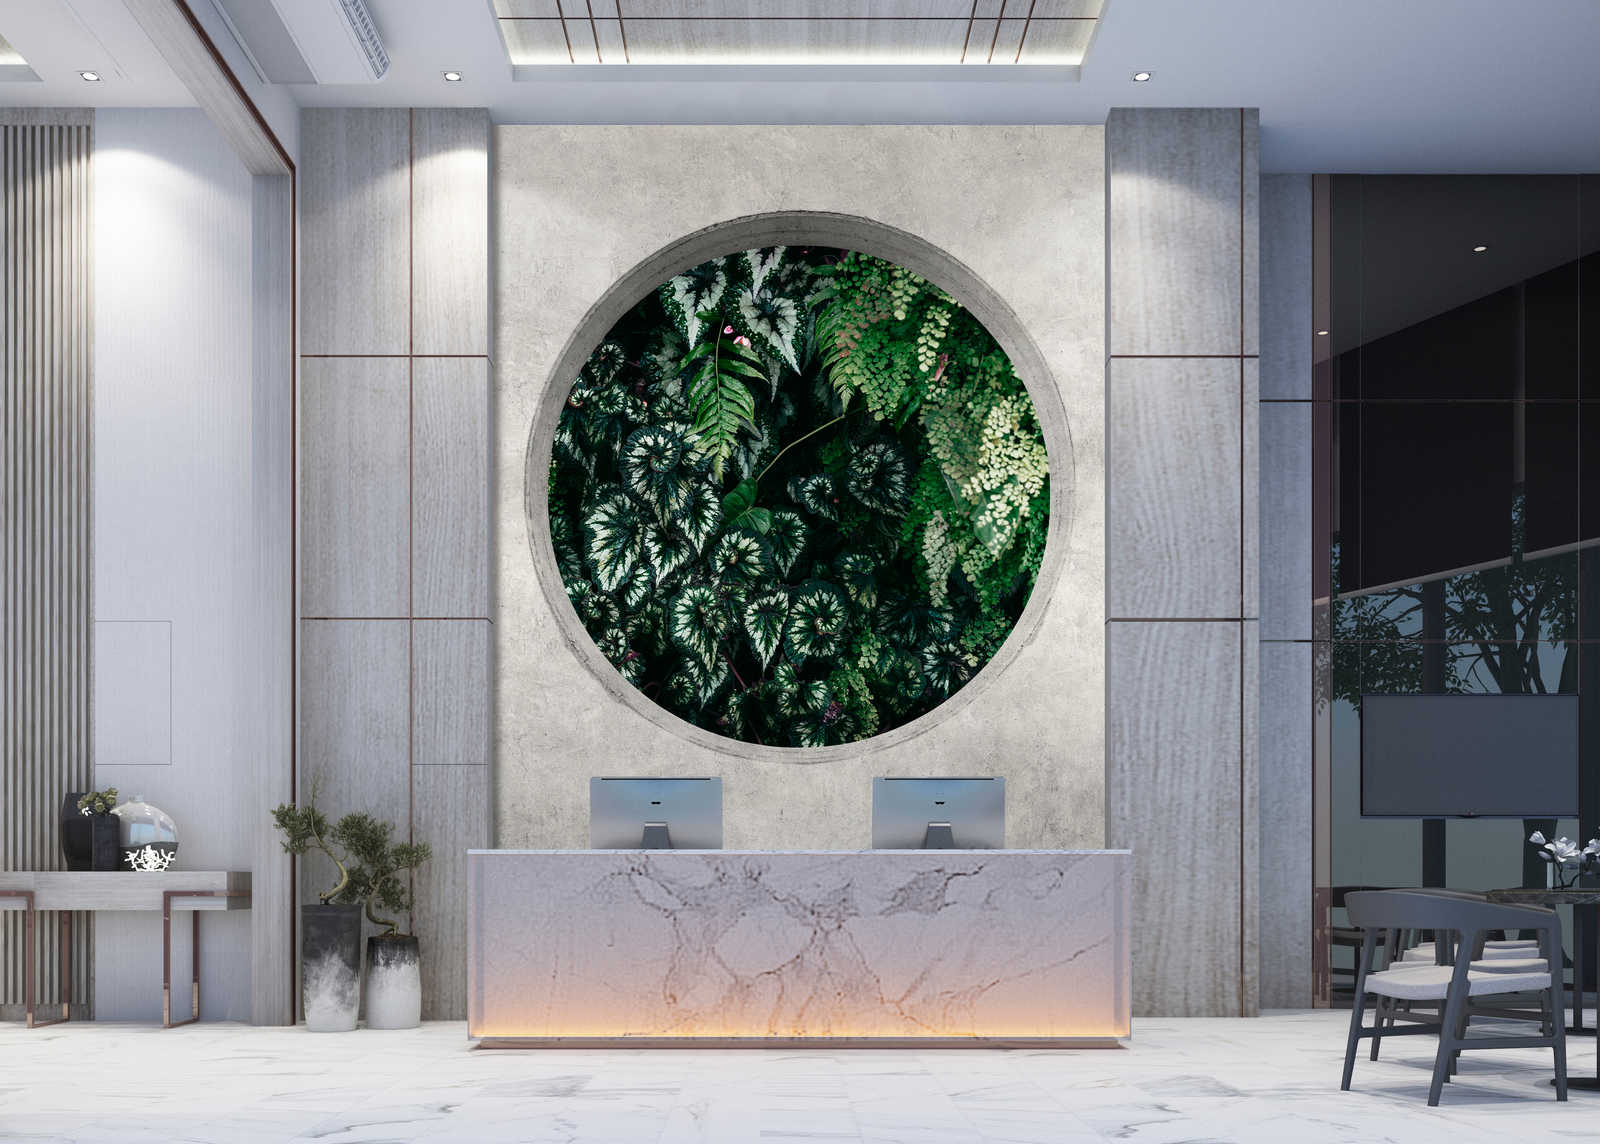             Deep Green 1 - Papier peint Fenêtre ronde avec plantes de la jungle
        